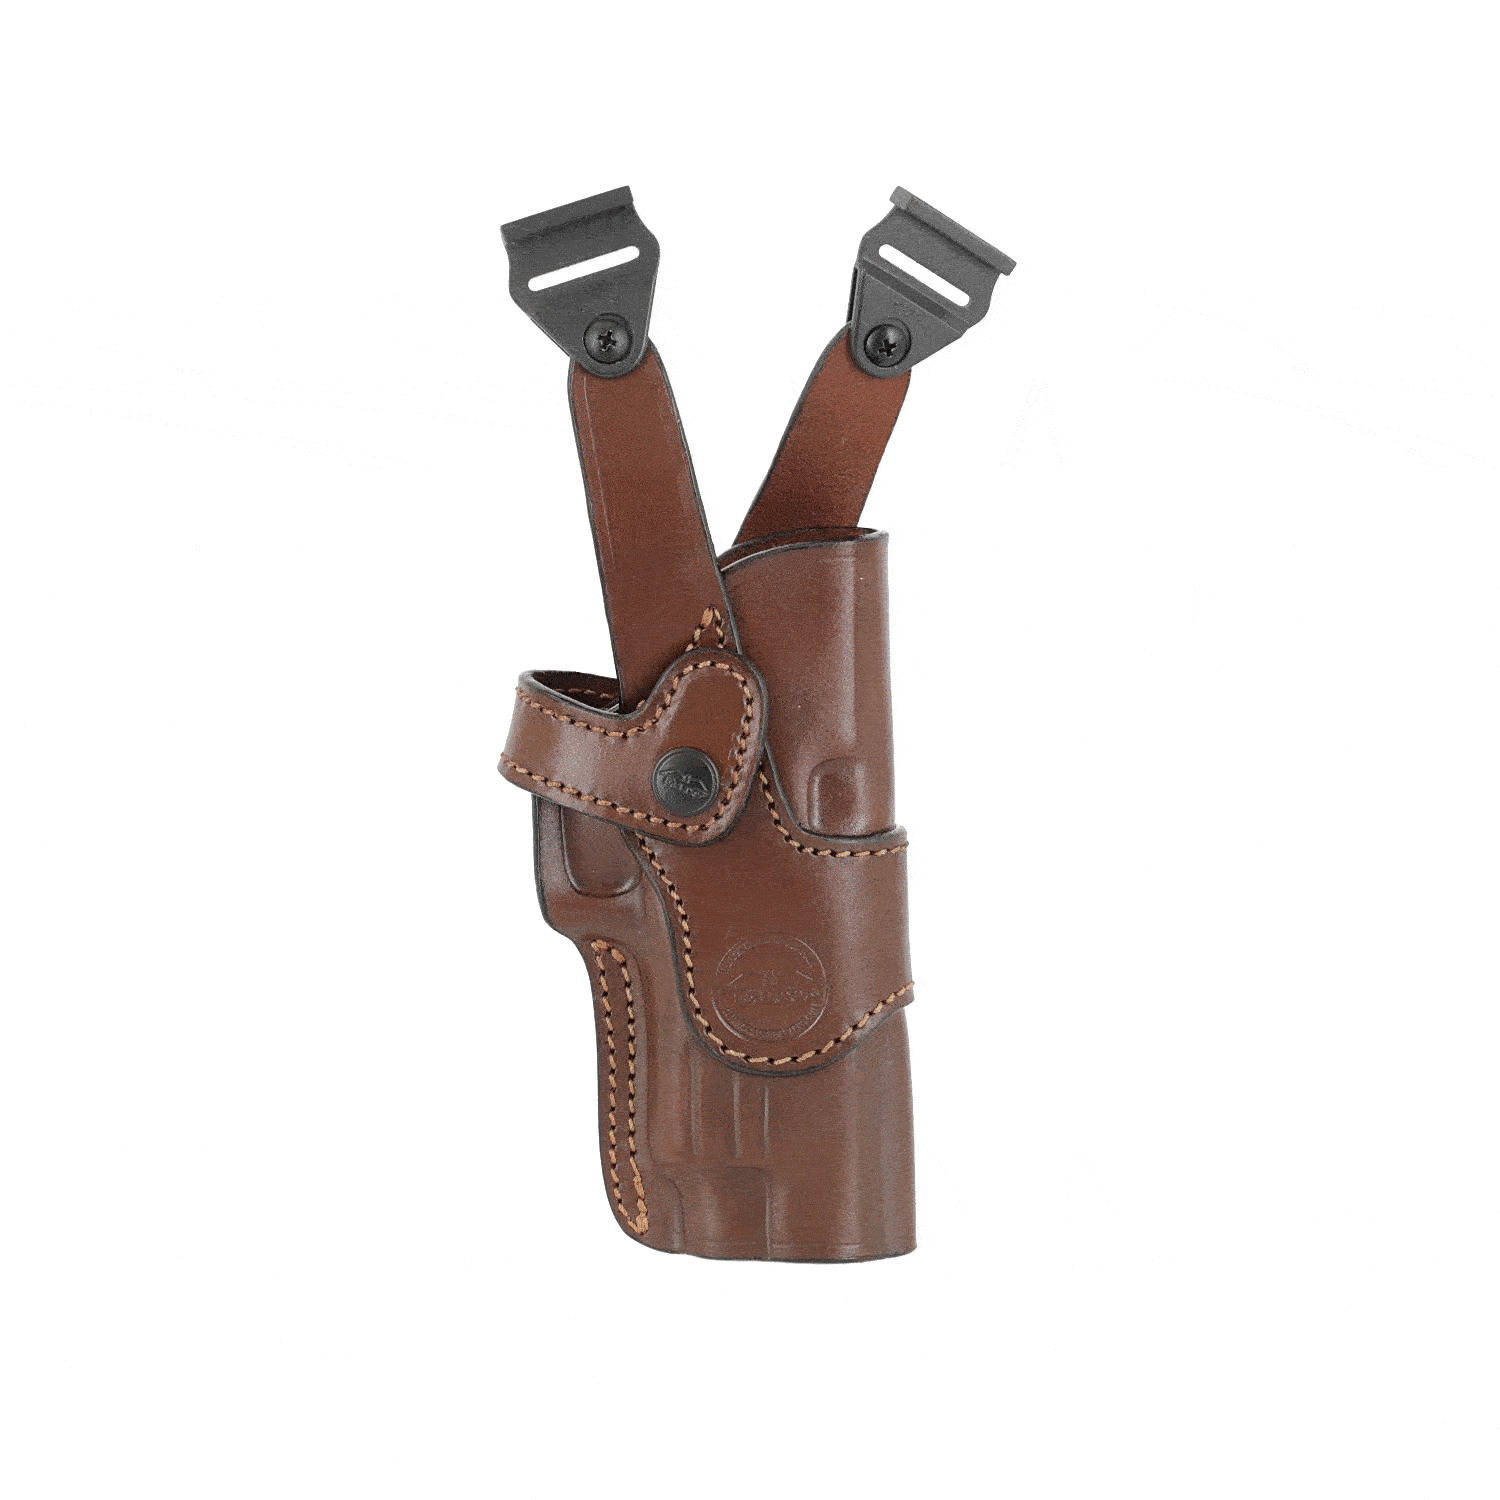 Vertical leather shoulder holster